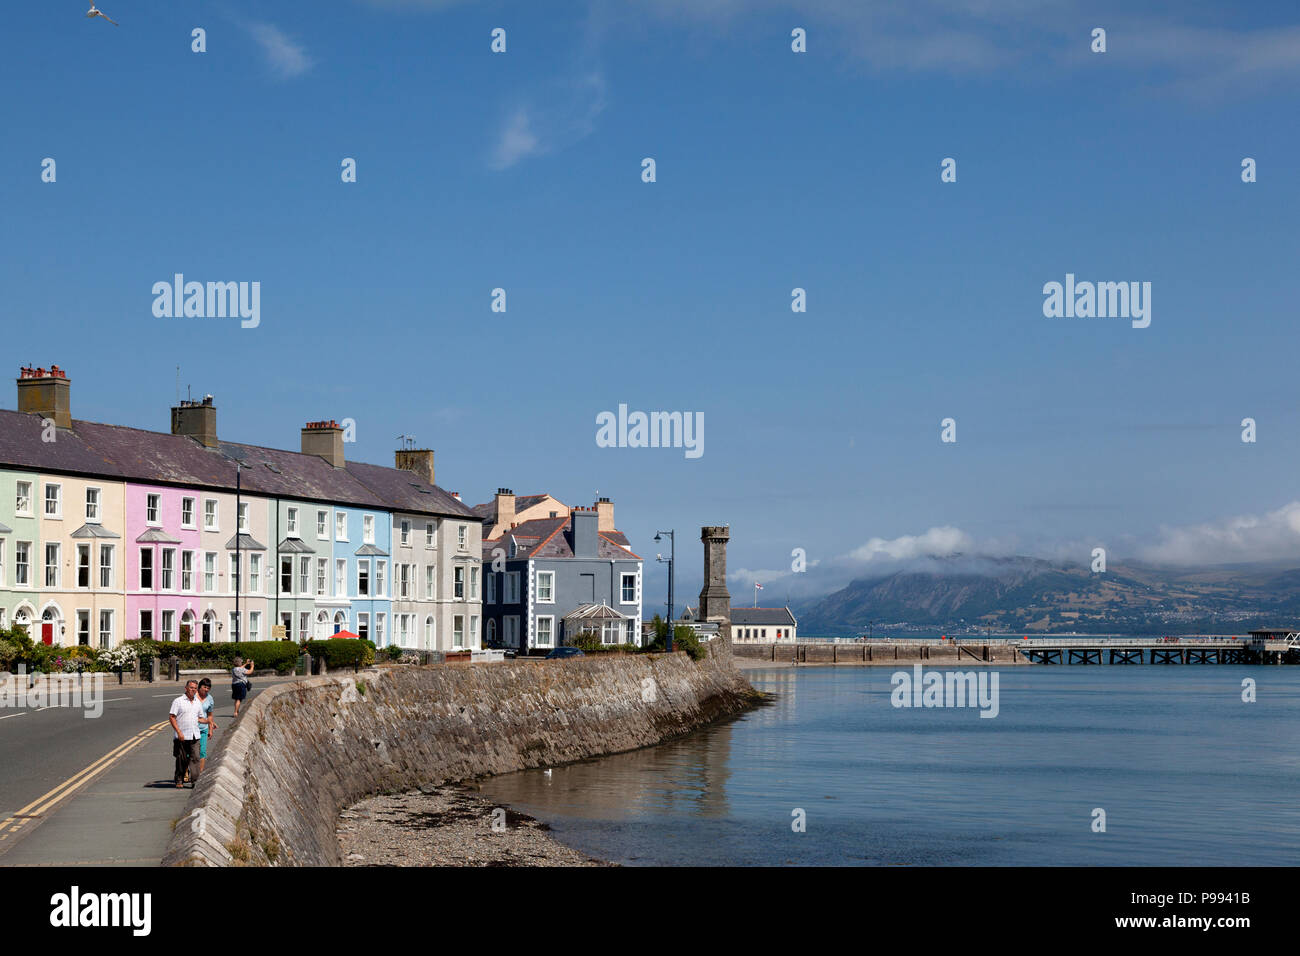 Hilera de casas en la costa, Beaumaris, Anglesey, Gales Foto de stock